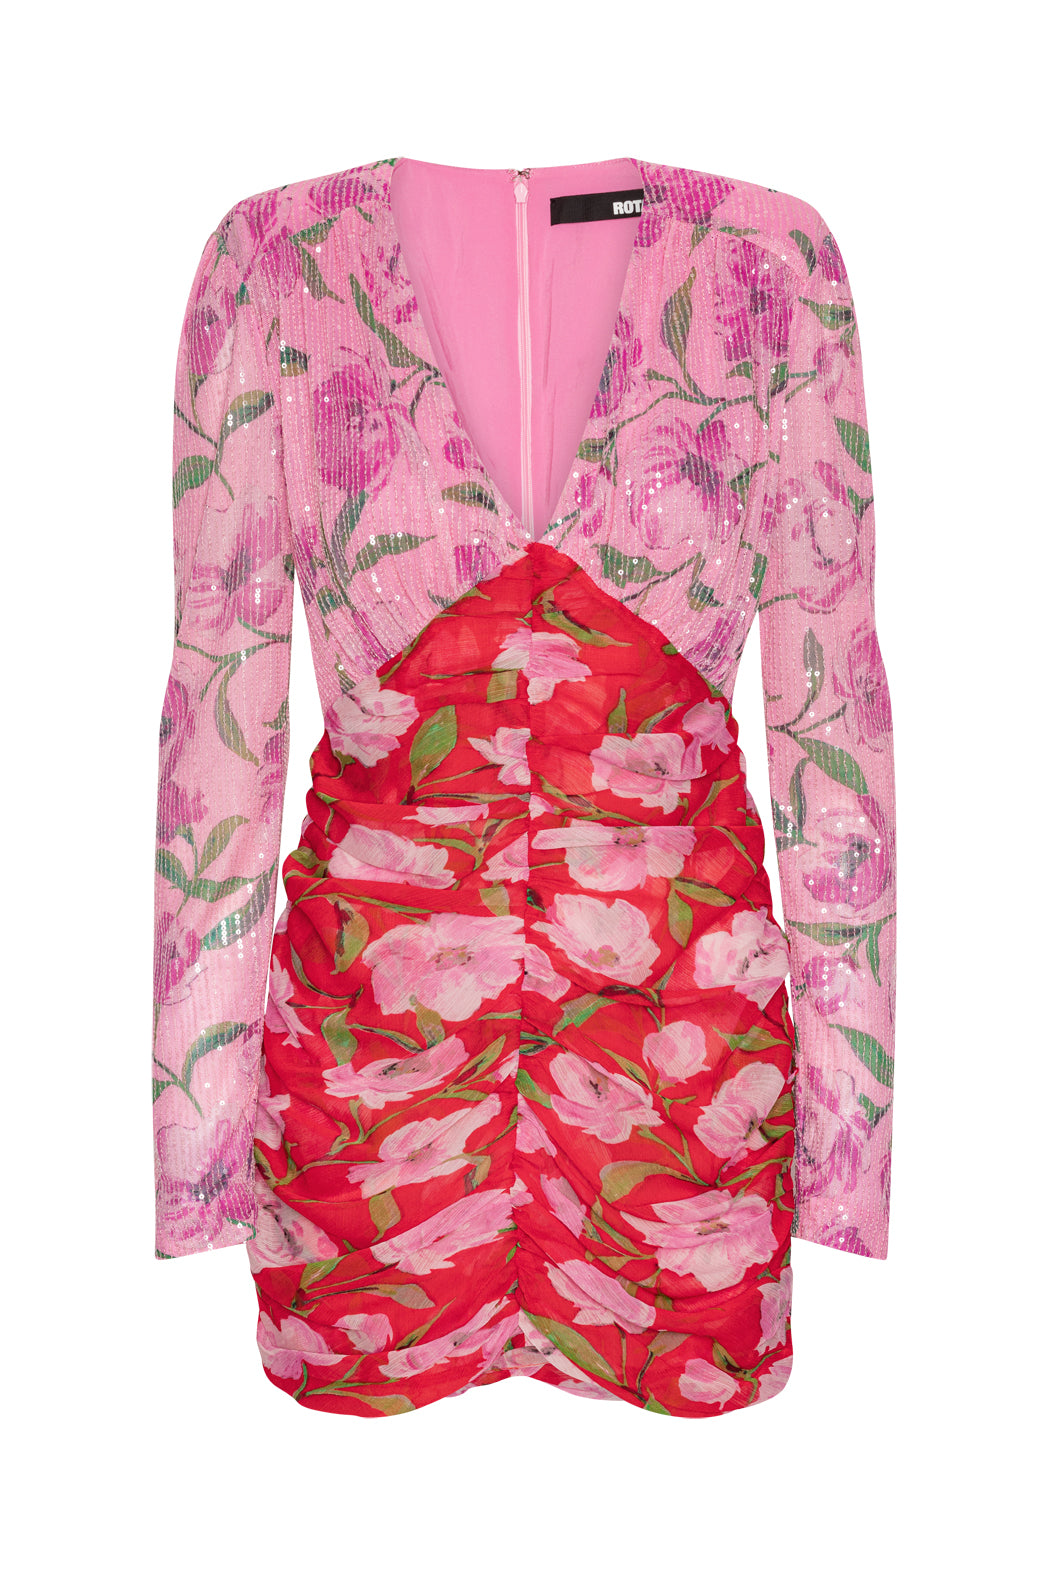 Printed Mini Ls Dress - Wildeve + Prism Pink
Comb